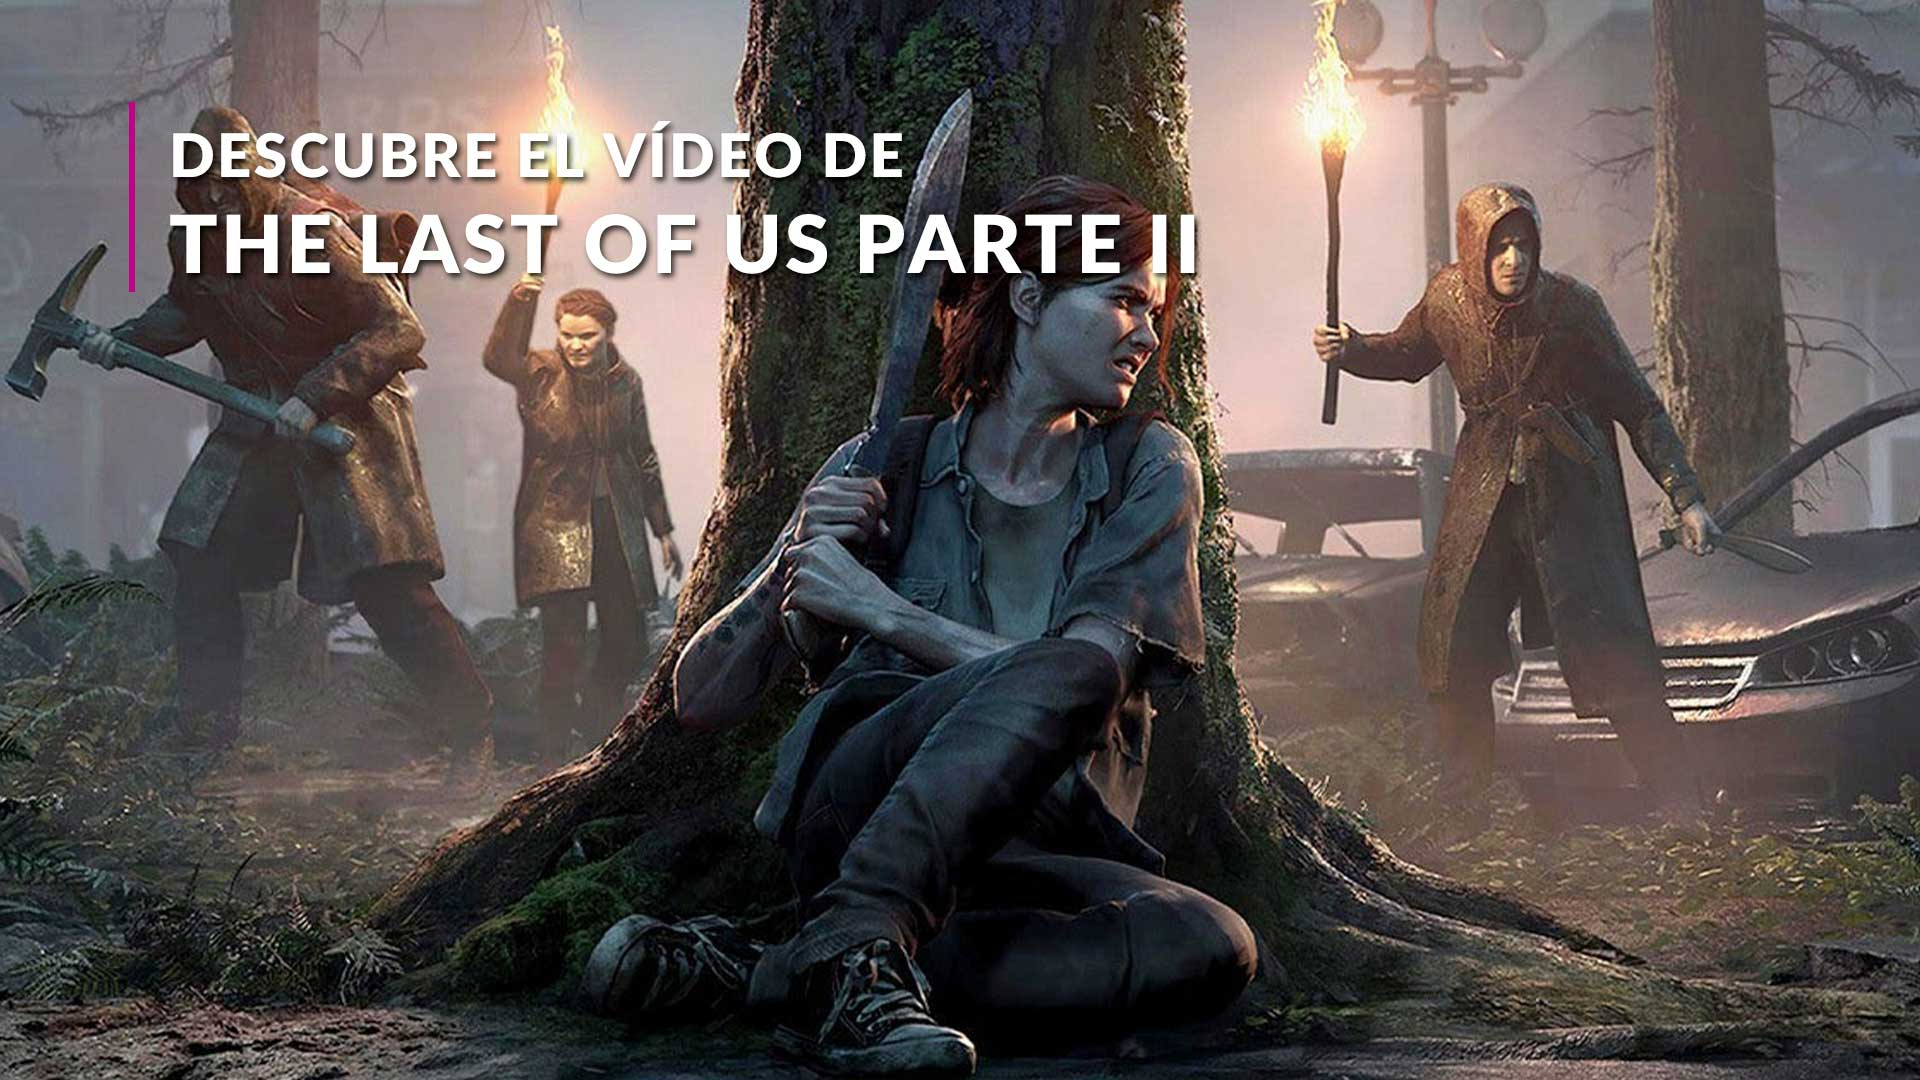 Jogo The Last of Us: Part II - PS4 - COMPRAR GAMES - Comprar Games - Loja  de games no ABC / SBC